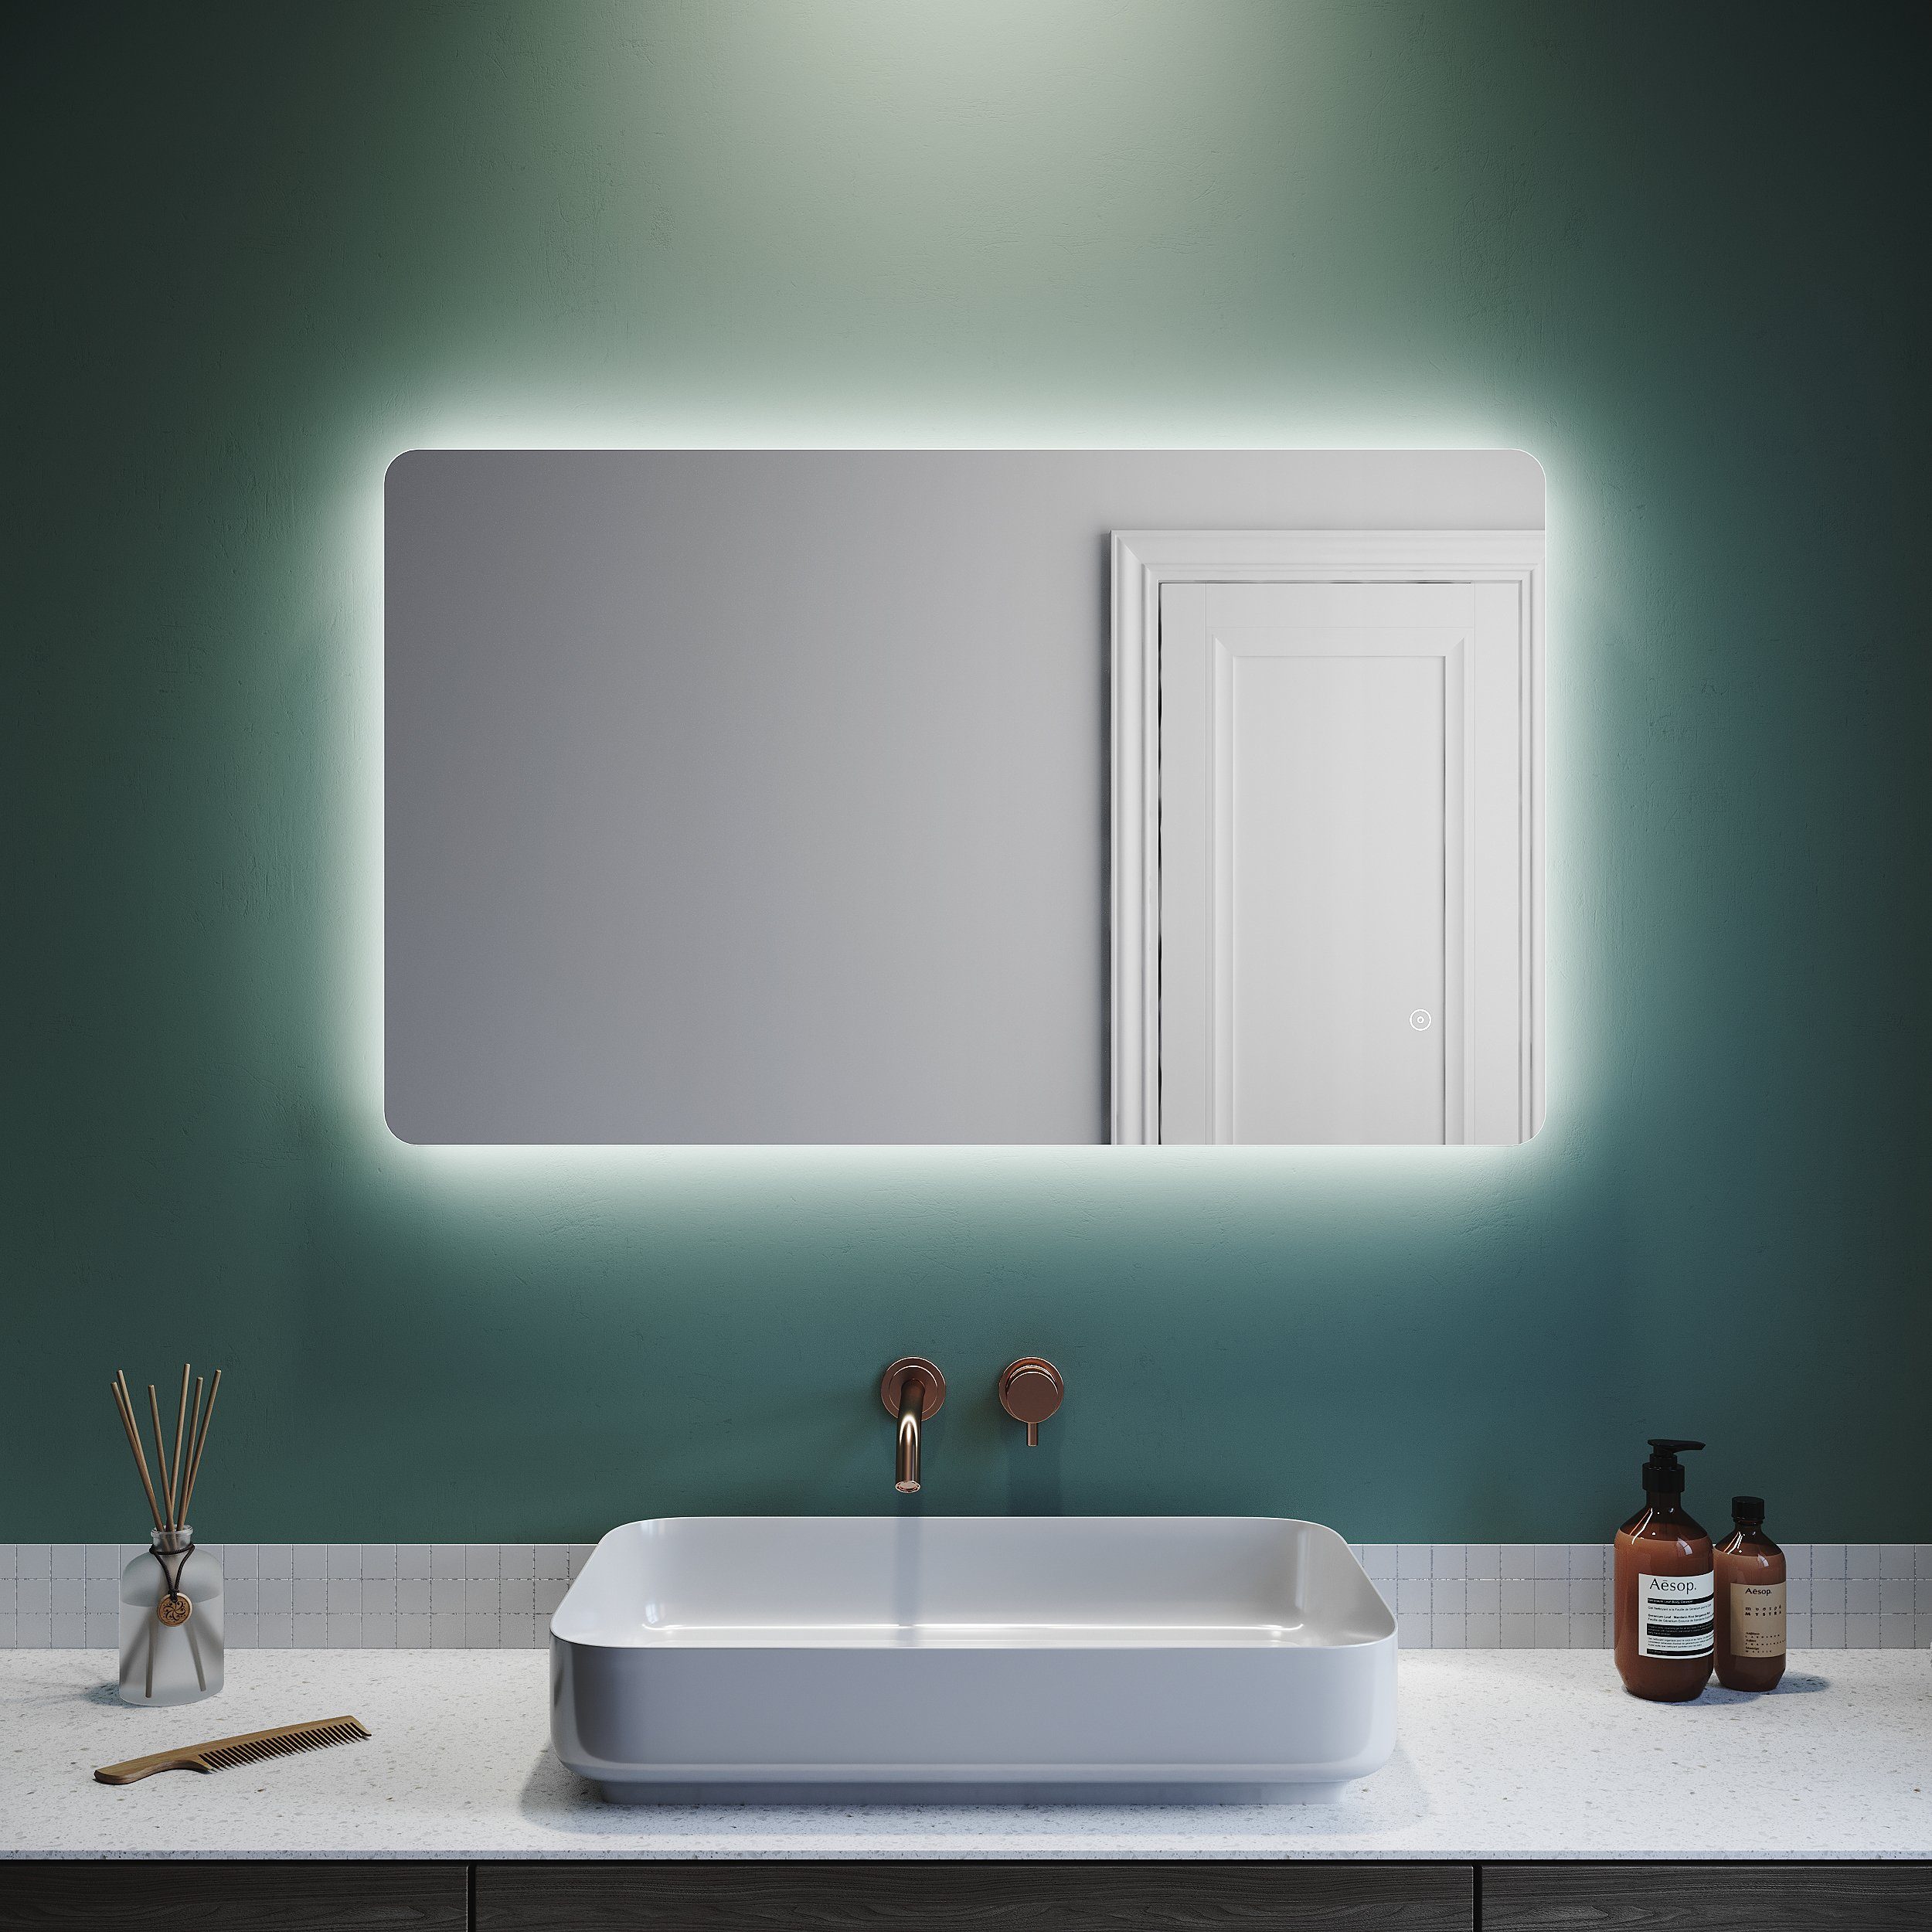 SONNI Badspiegel »Badspiegel mit beleuchtung, 100 x 60 cm, kaltweiß, LED- Beleuchtung beschlagfrei Lichtspiegel LED Spiegel Wandspiegel mit  Touch-Schalter IP44 energiesparend«